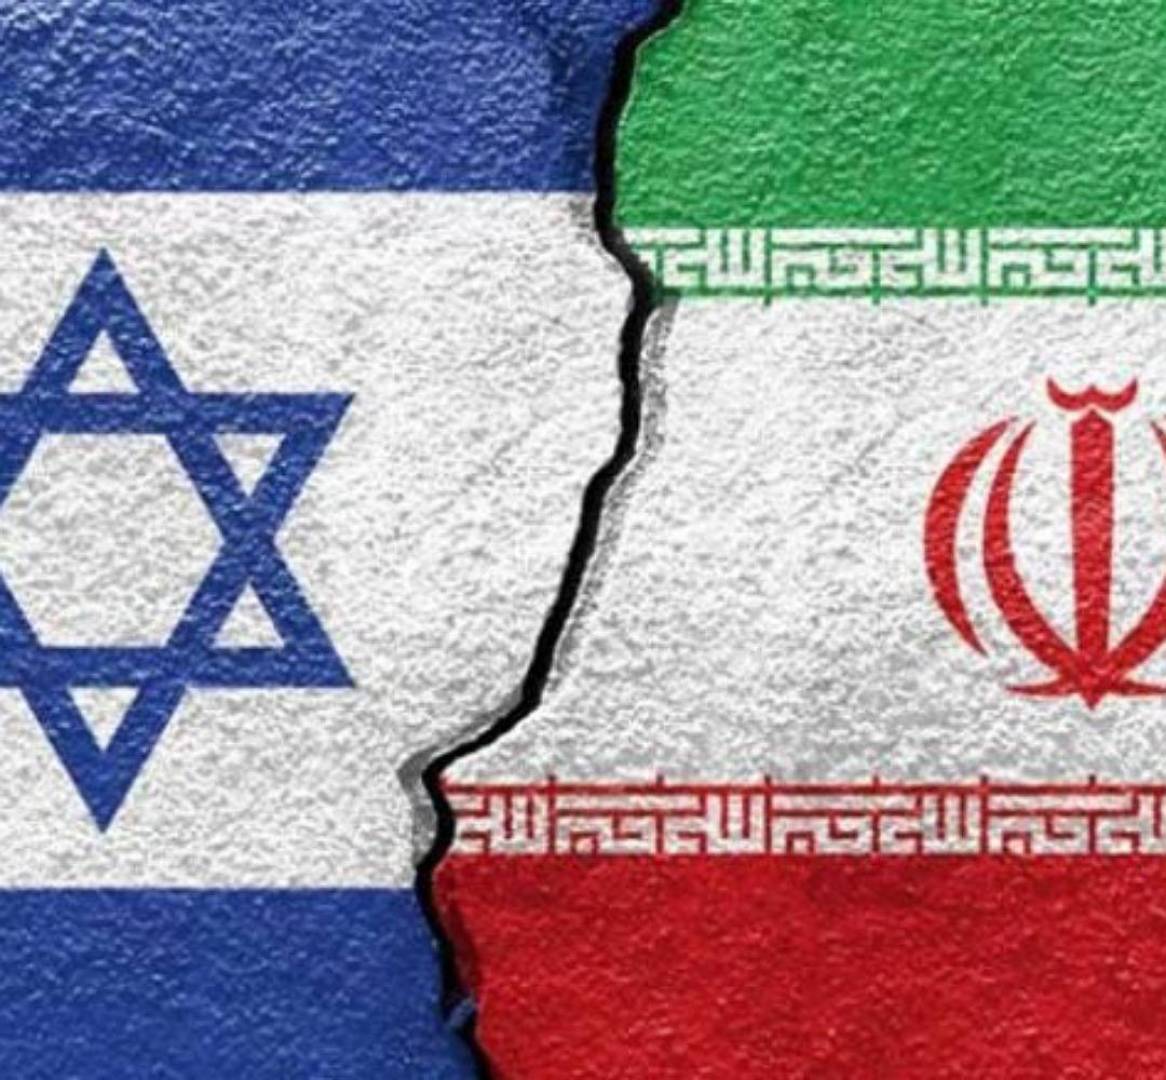 وسائل إعلام صهيونية تدعي إحباط هجوم إيراني على إسرائيليين في تايلاند عقب سلسلة اغتيالات وقعت في إيران